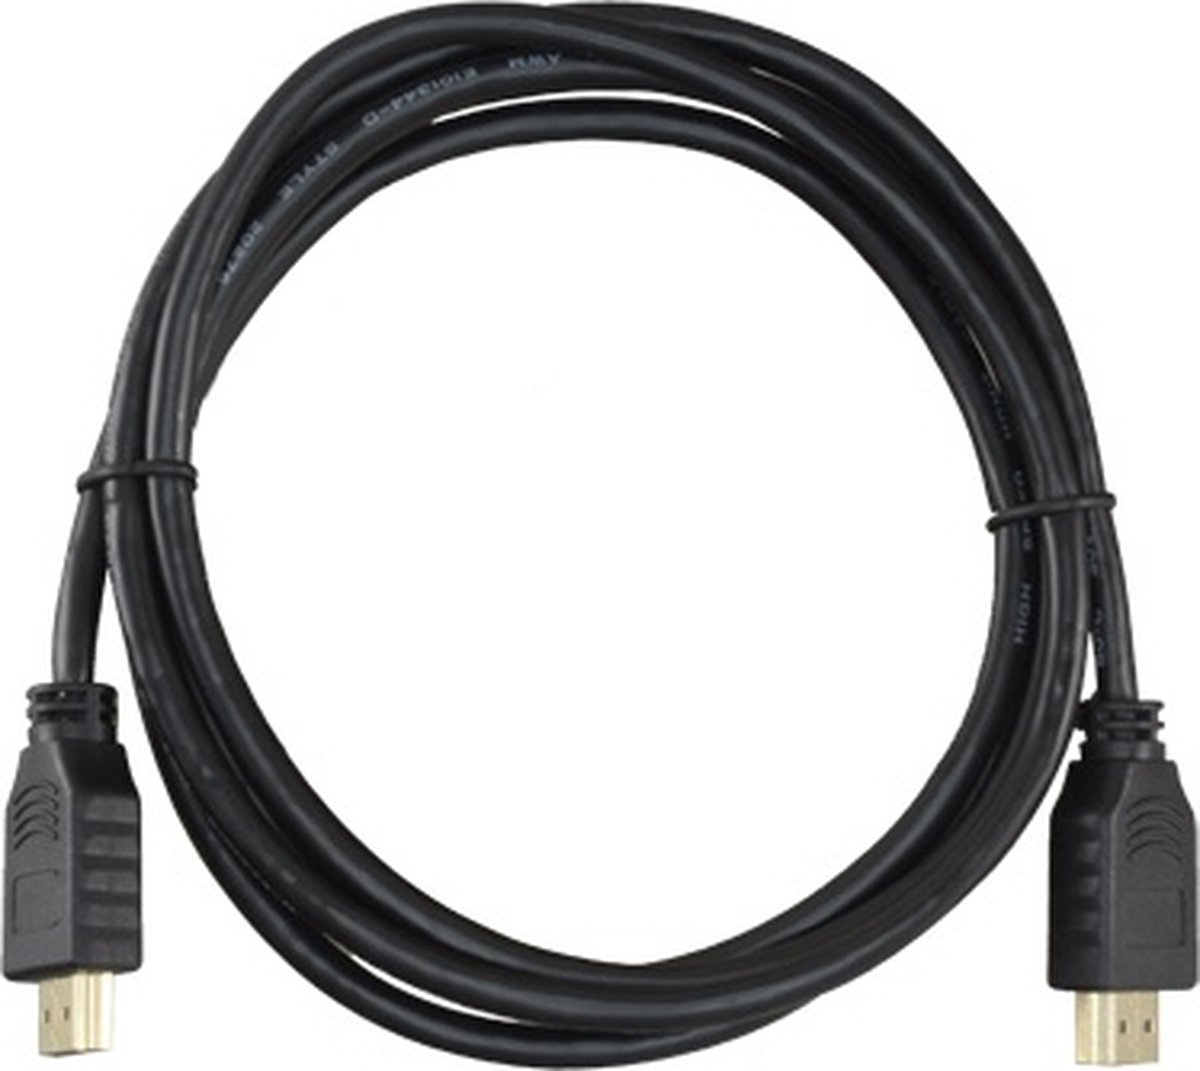 WL4 HDMI kabel 1,8 meter High-speed met 100% koperen kern, goud vergulde afgeschermde connectors en Ethernet 1.4